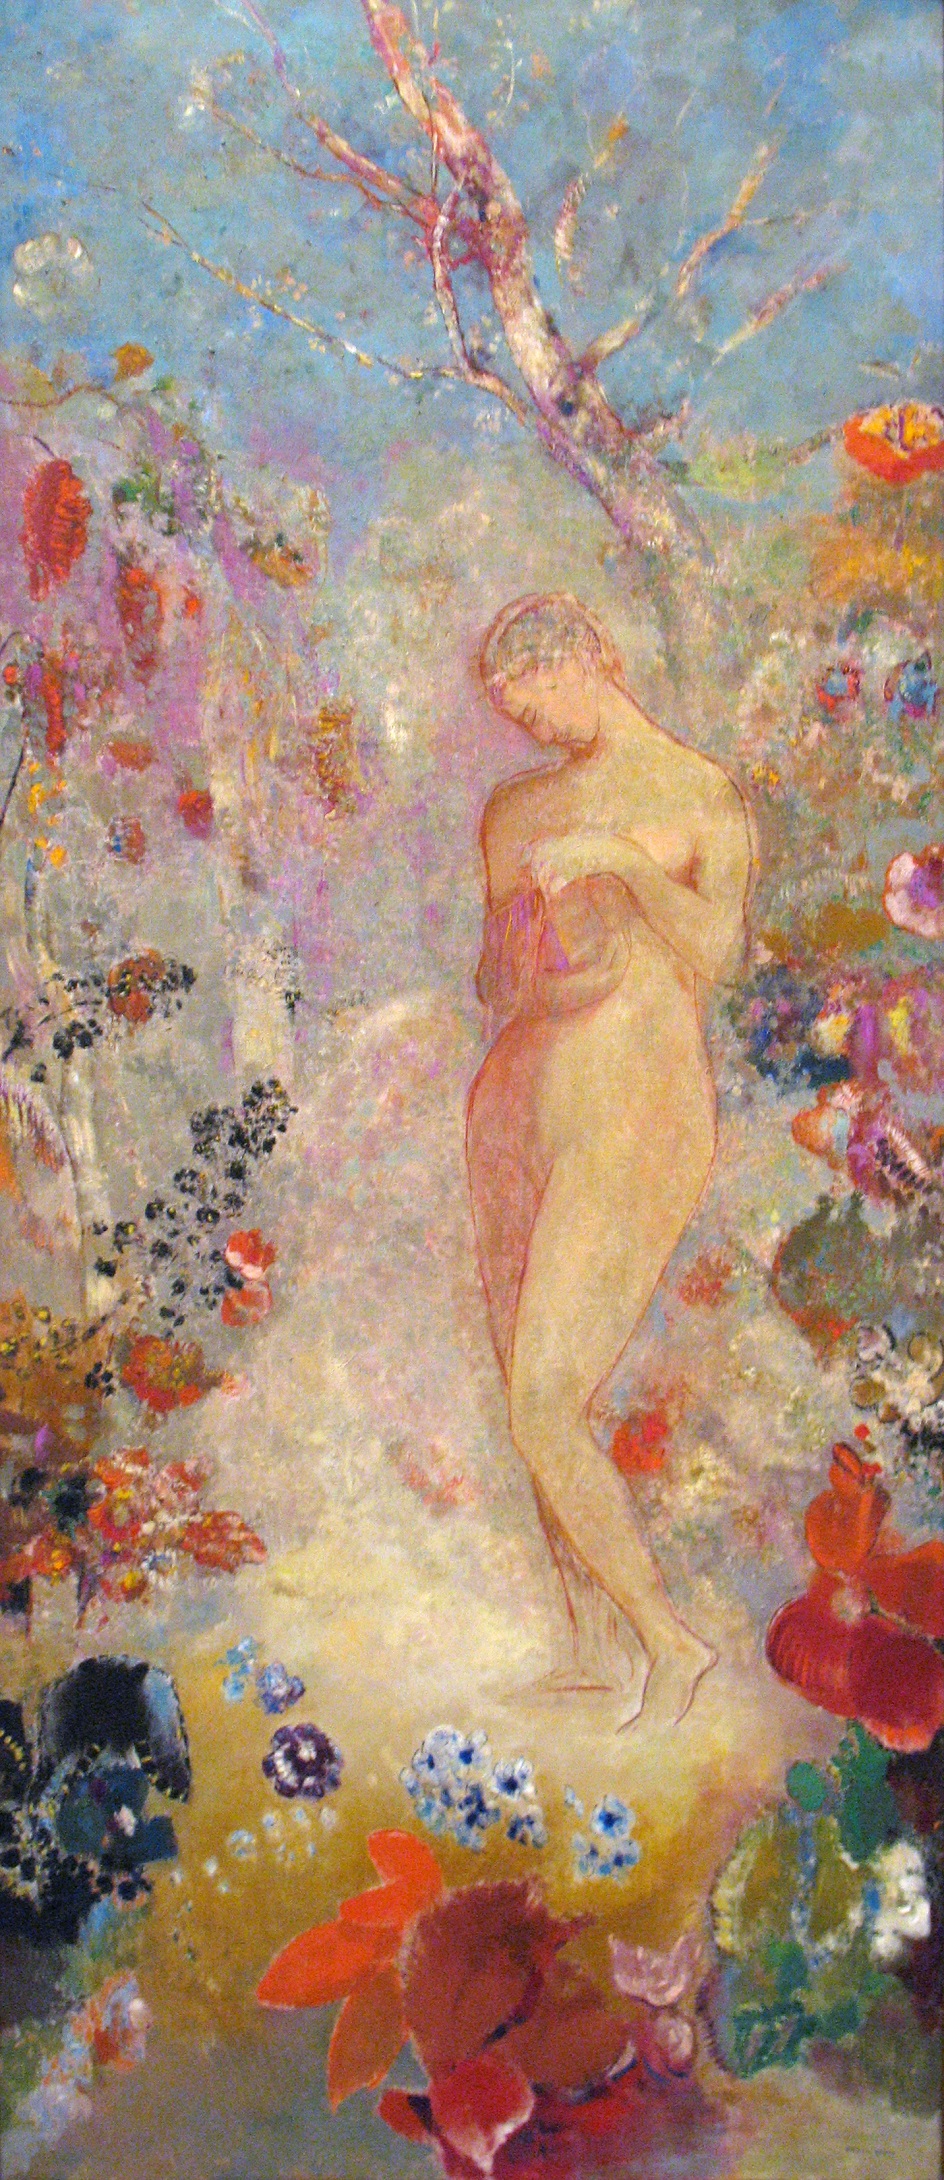 Одилон Редон. Картина «Пандора», 1914